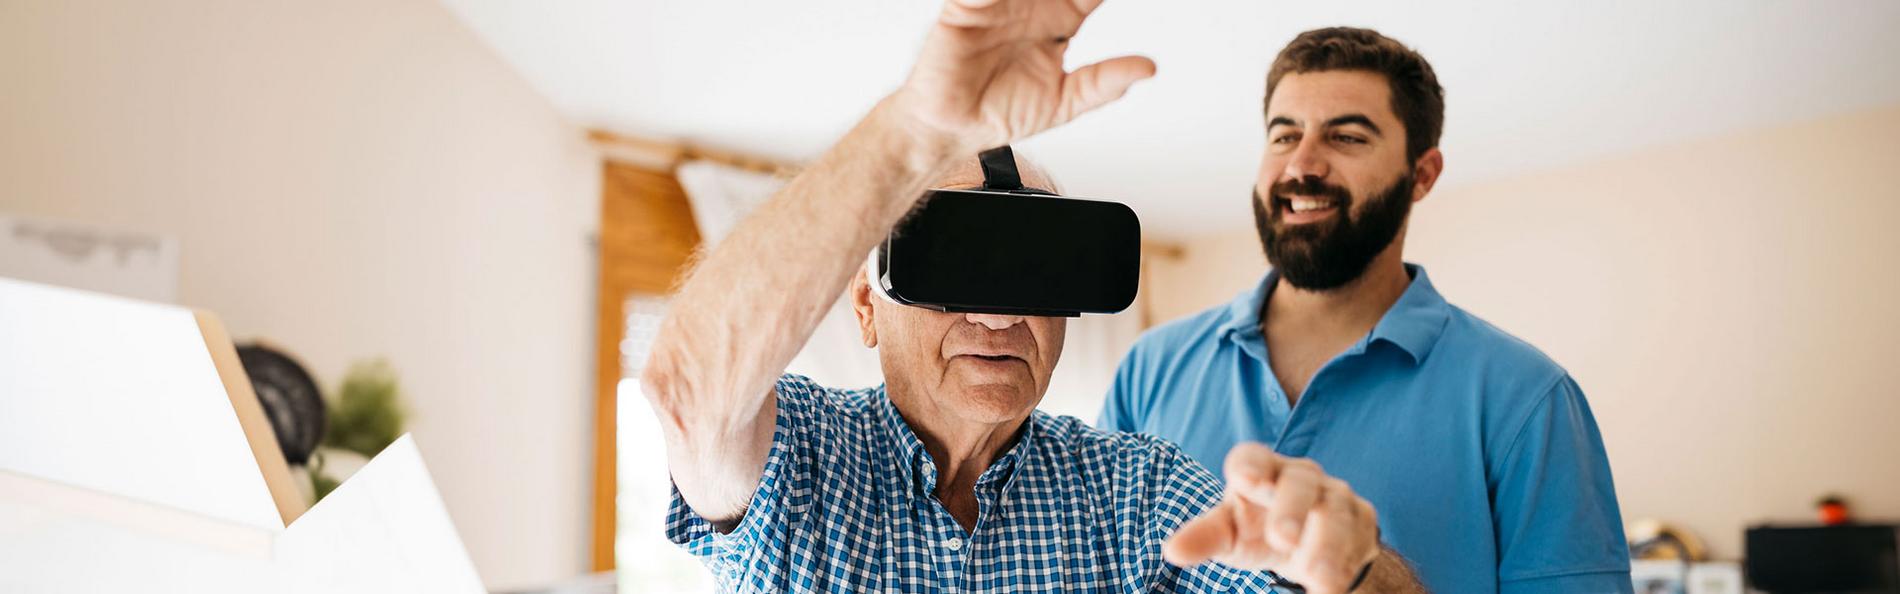 Älterer Mann trainiert mit VR Brille